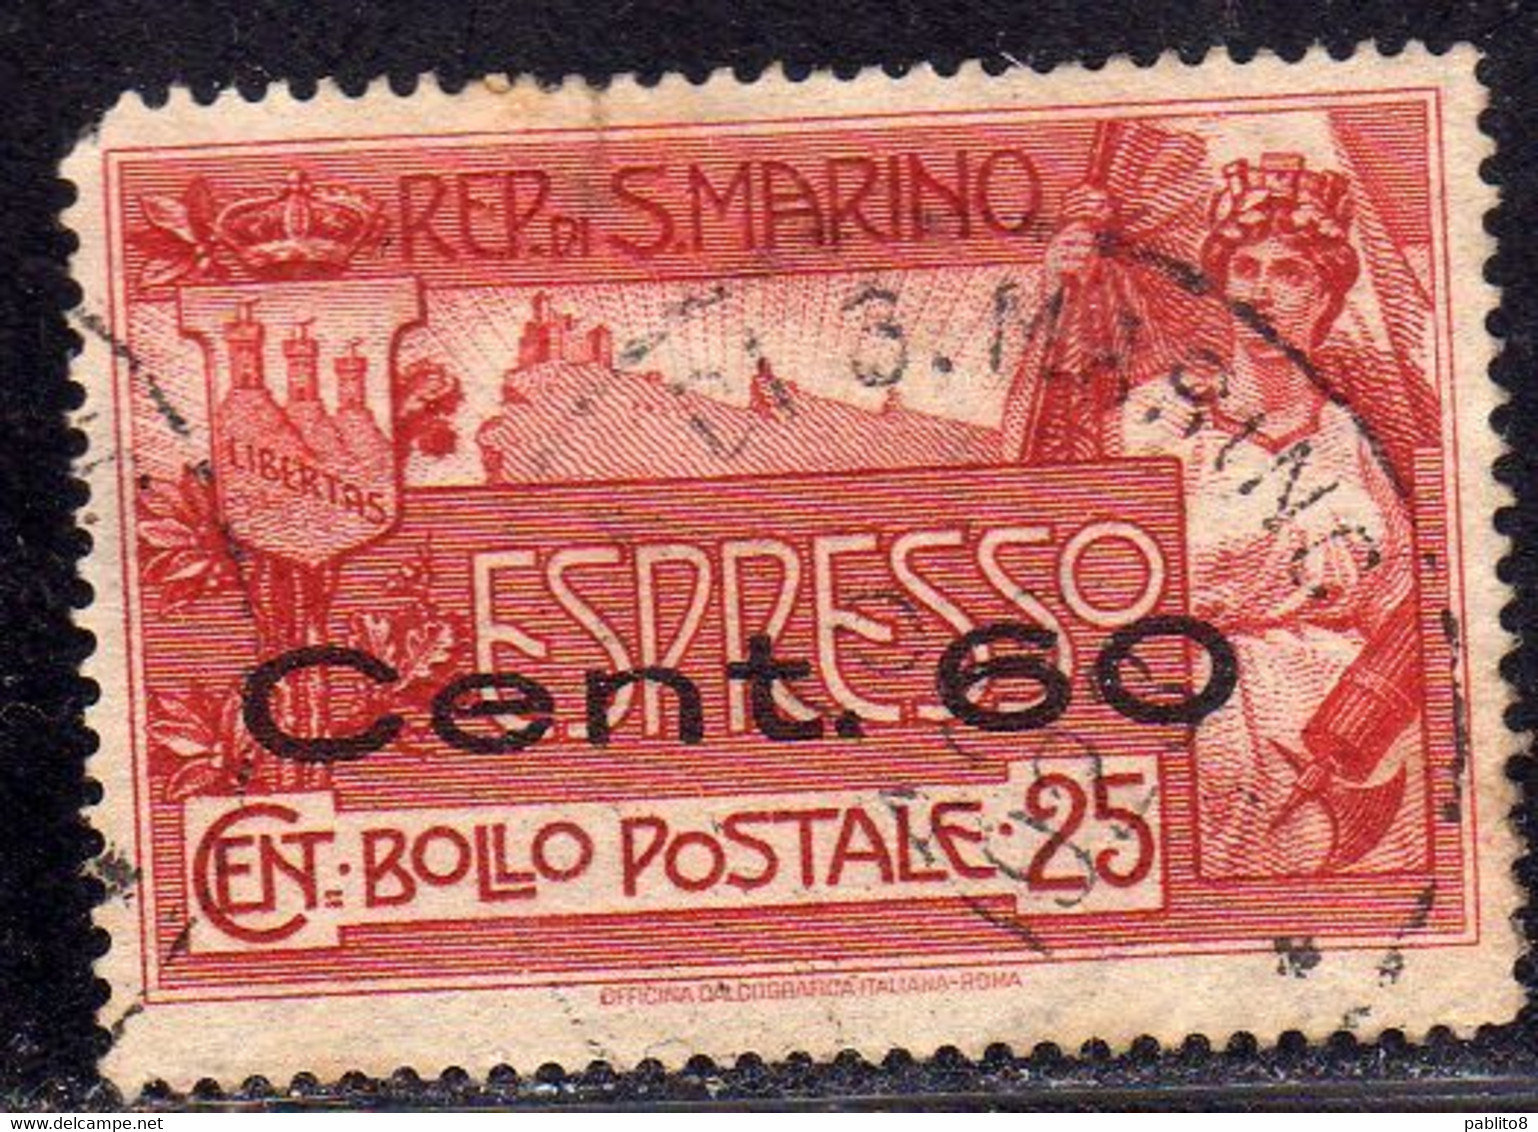 REPUBBLICA DI SAN MARINO 1923 ESPRESSO SPECIAL DELIVERY CENT. 60 SU 25c USATO USED OBLITERE' - Express Letter Stamps